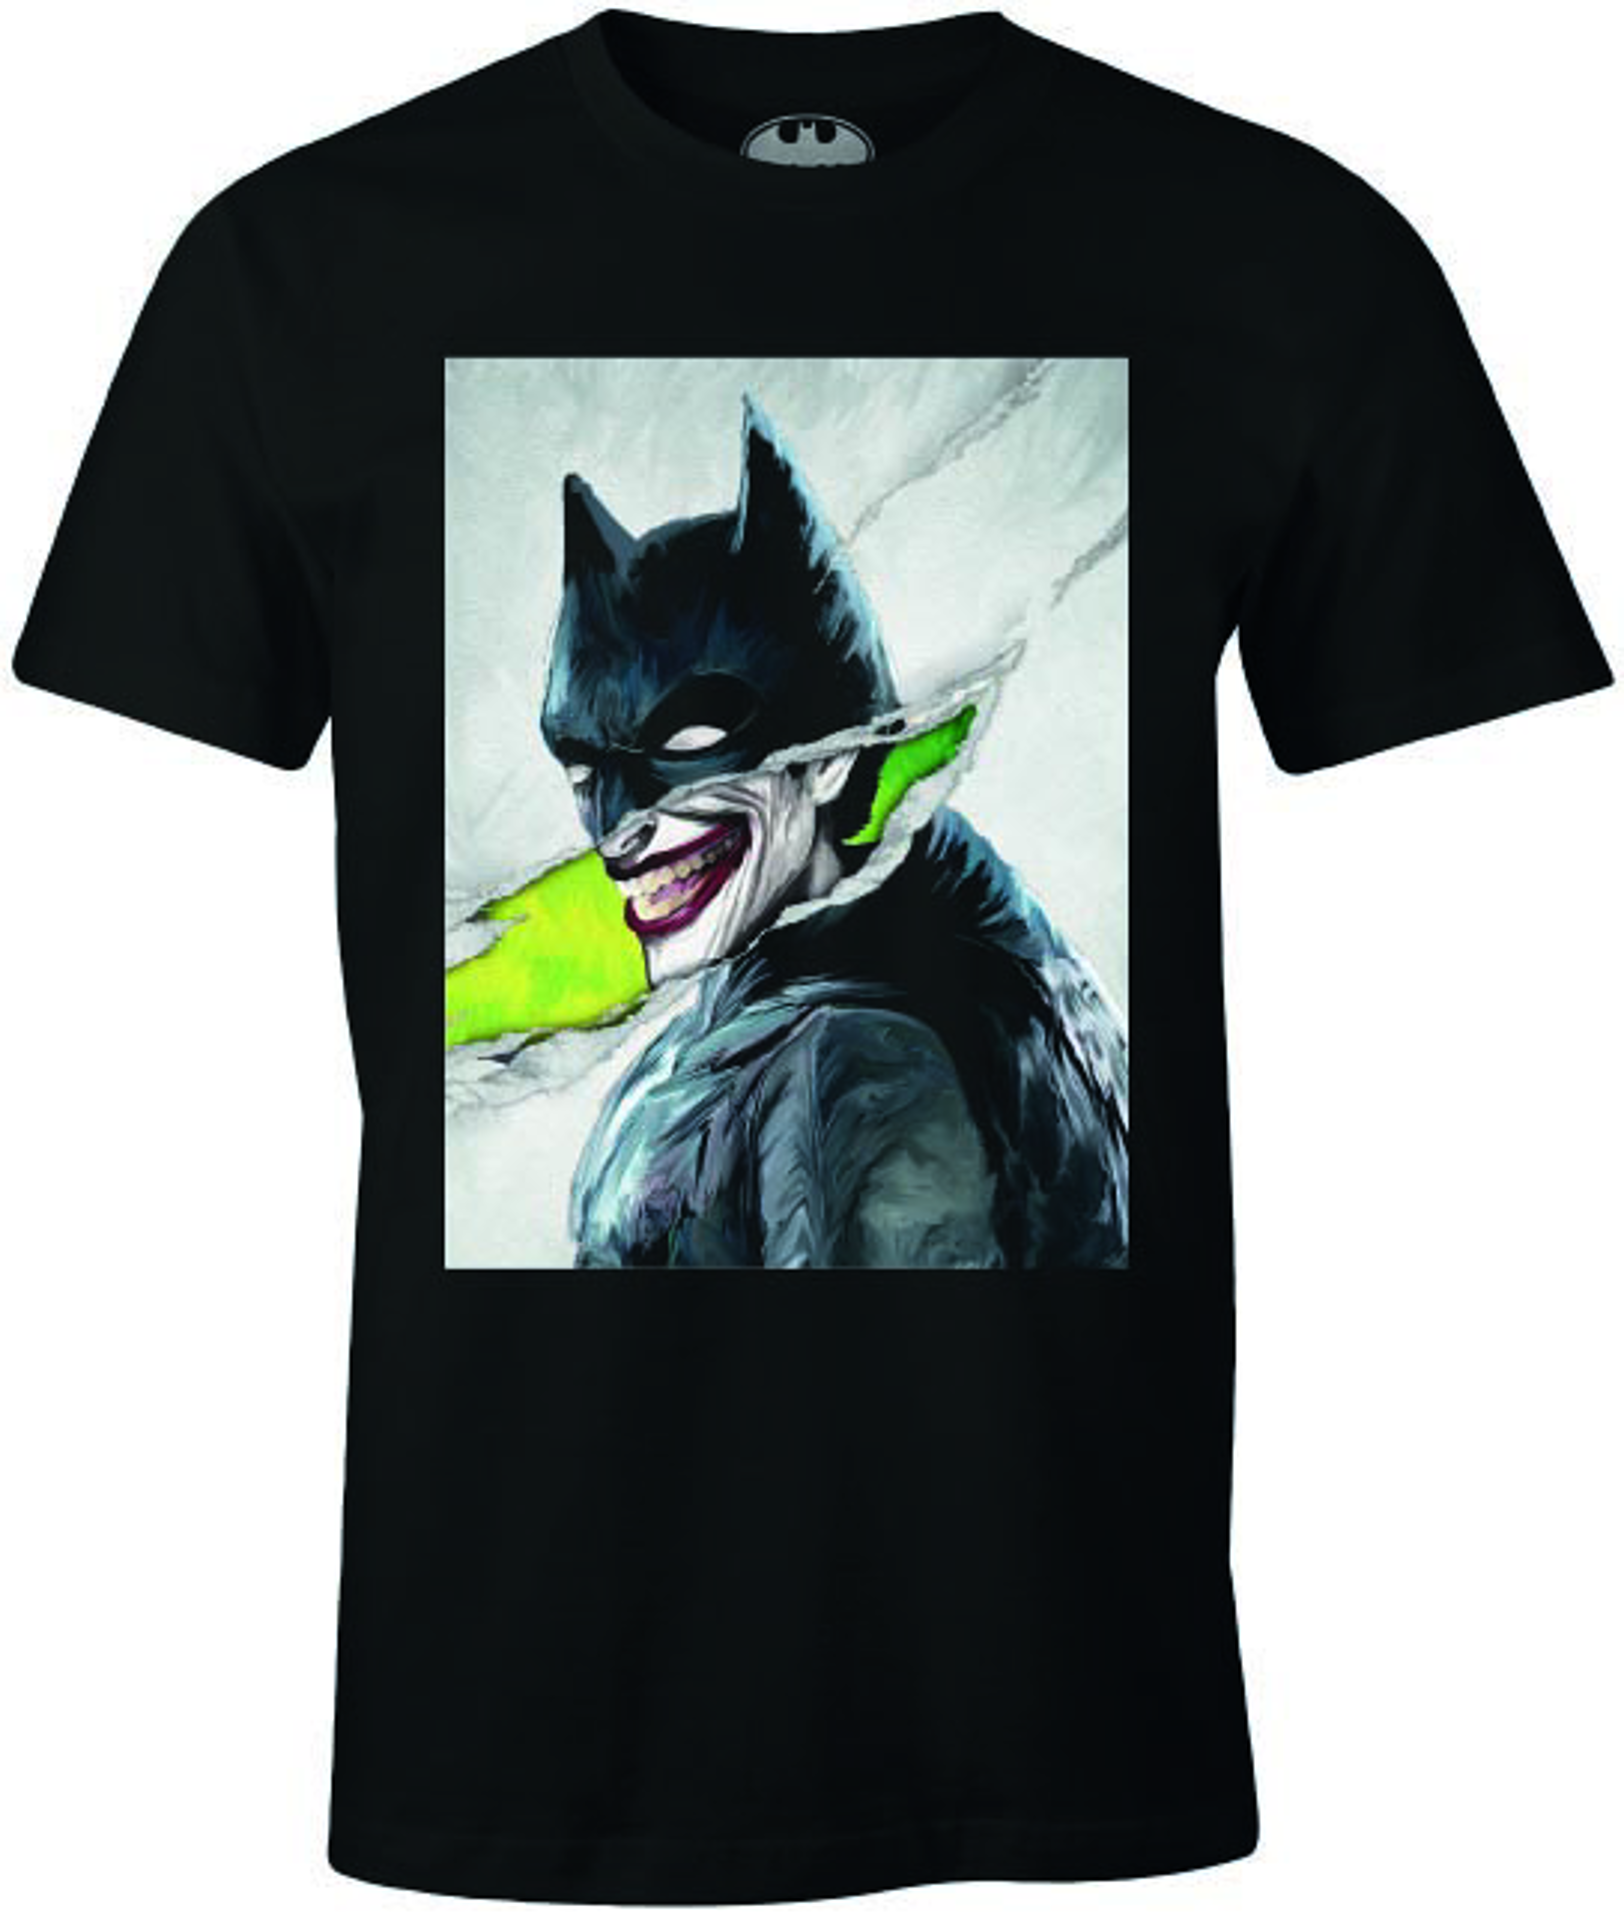 DC Comics - Batman - T-shirt Noir Hommes - Le Joker déguisé en Batman - M